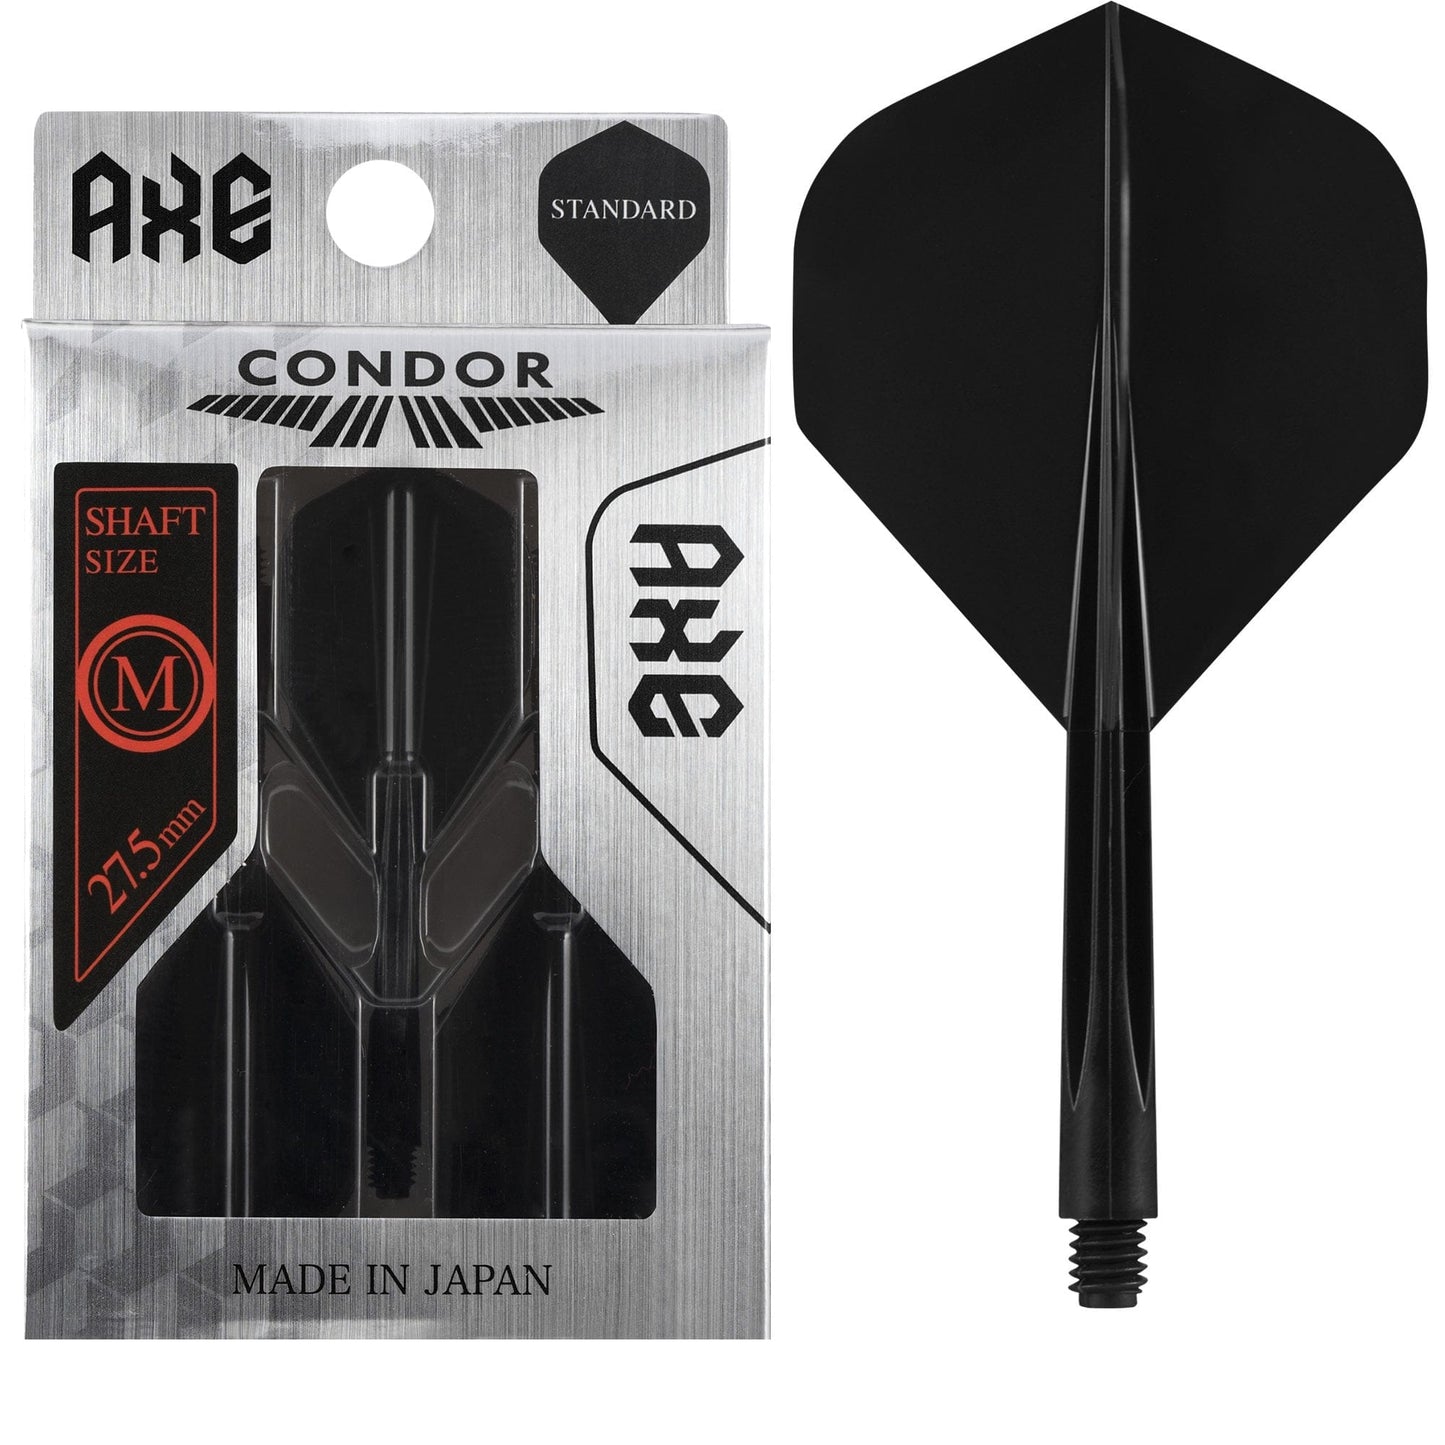 Condor AXE Dart Flights - Standard - Black Medium